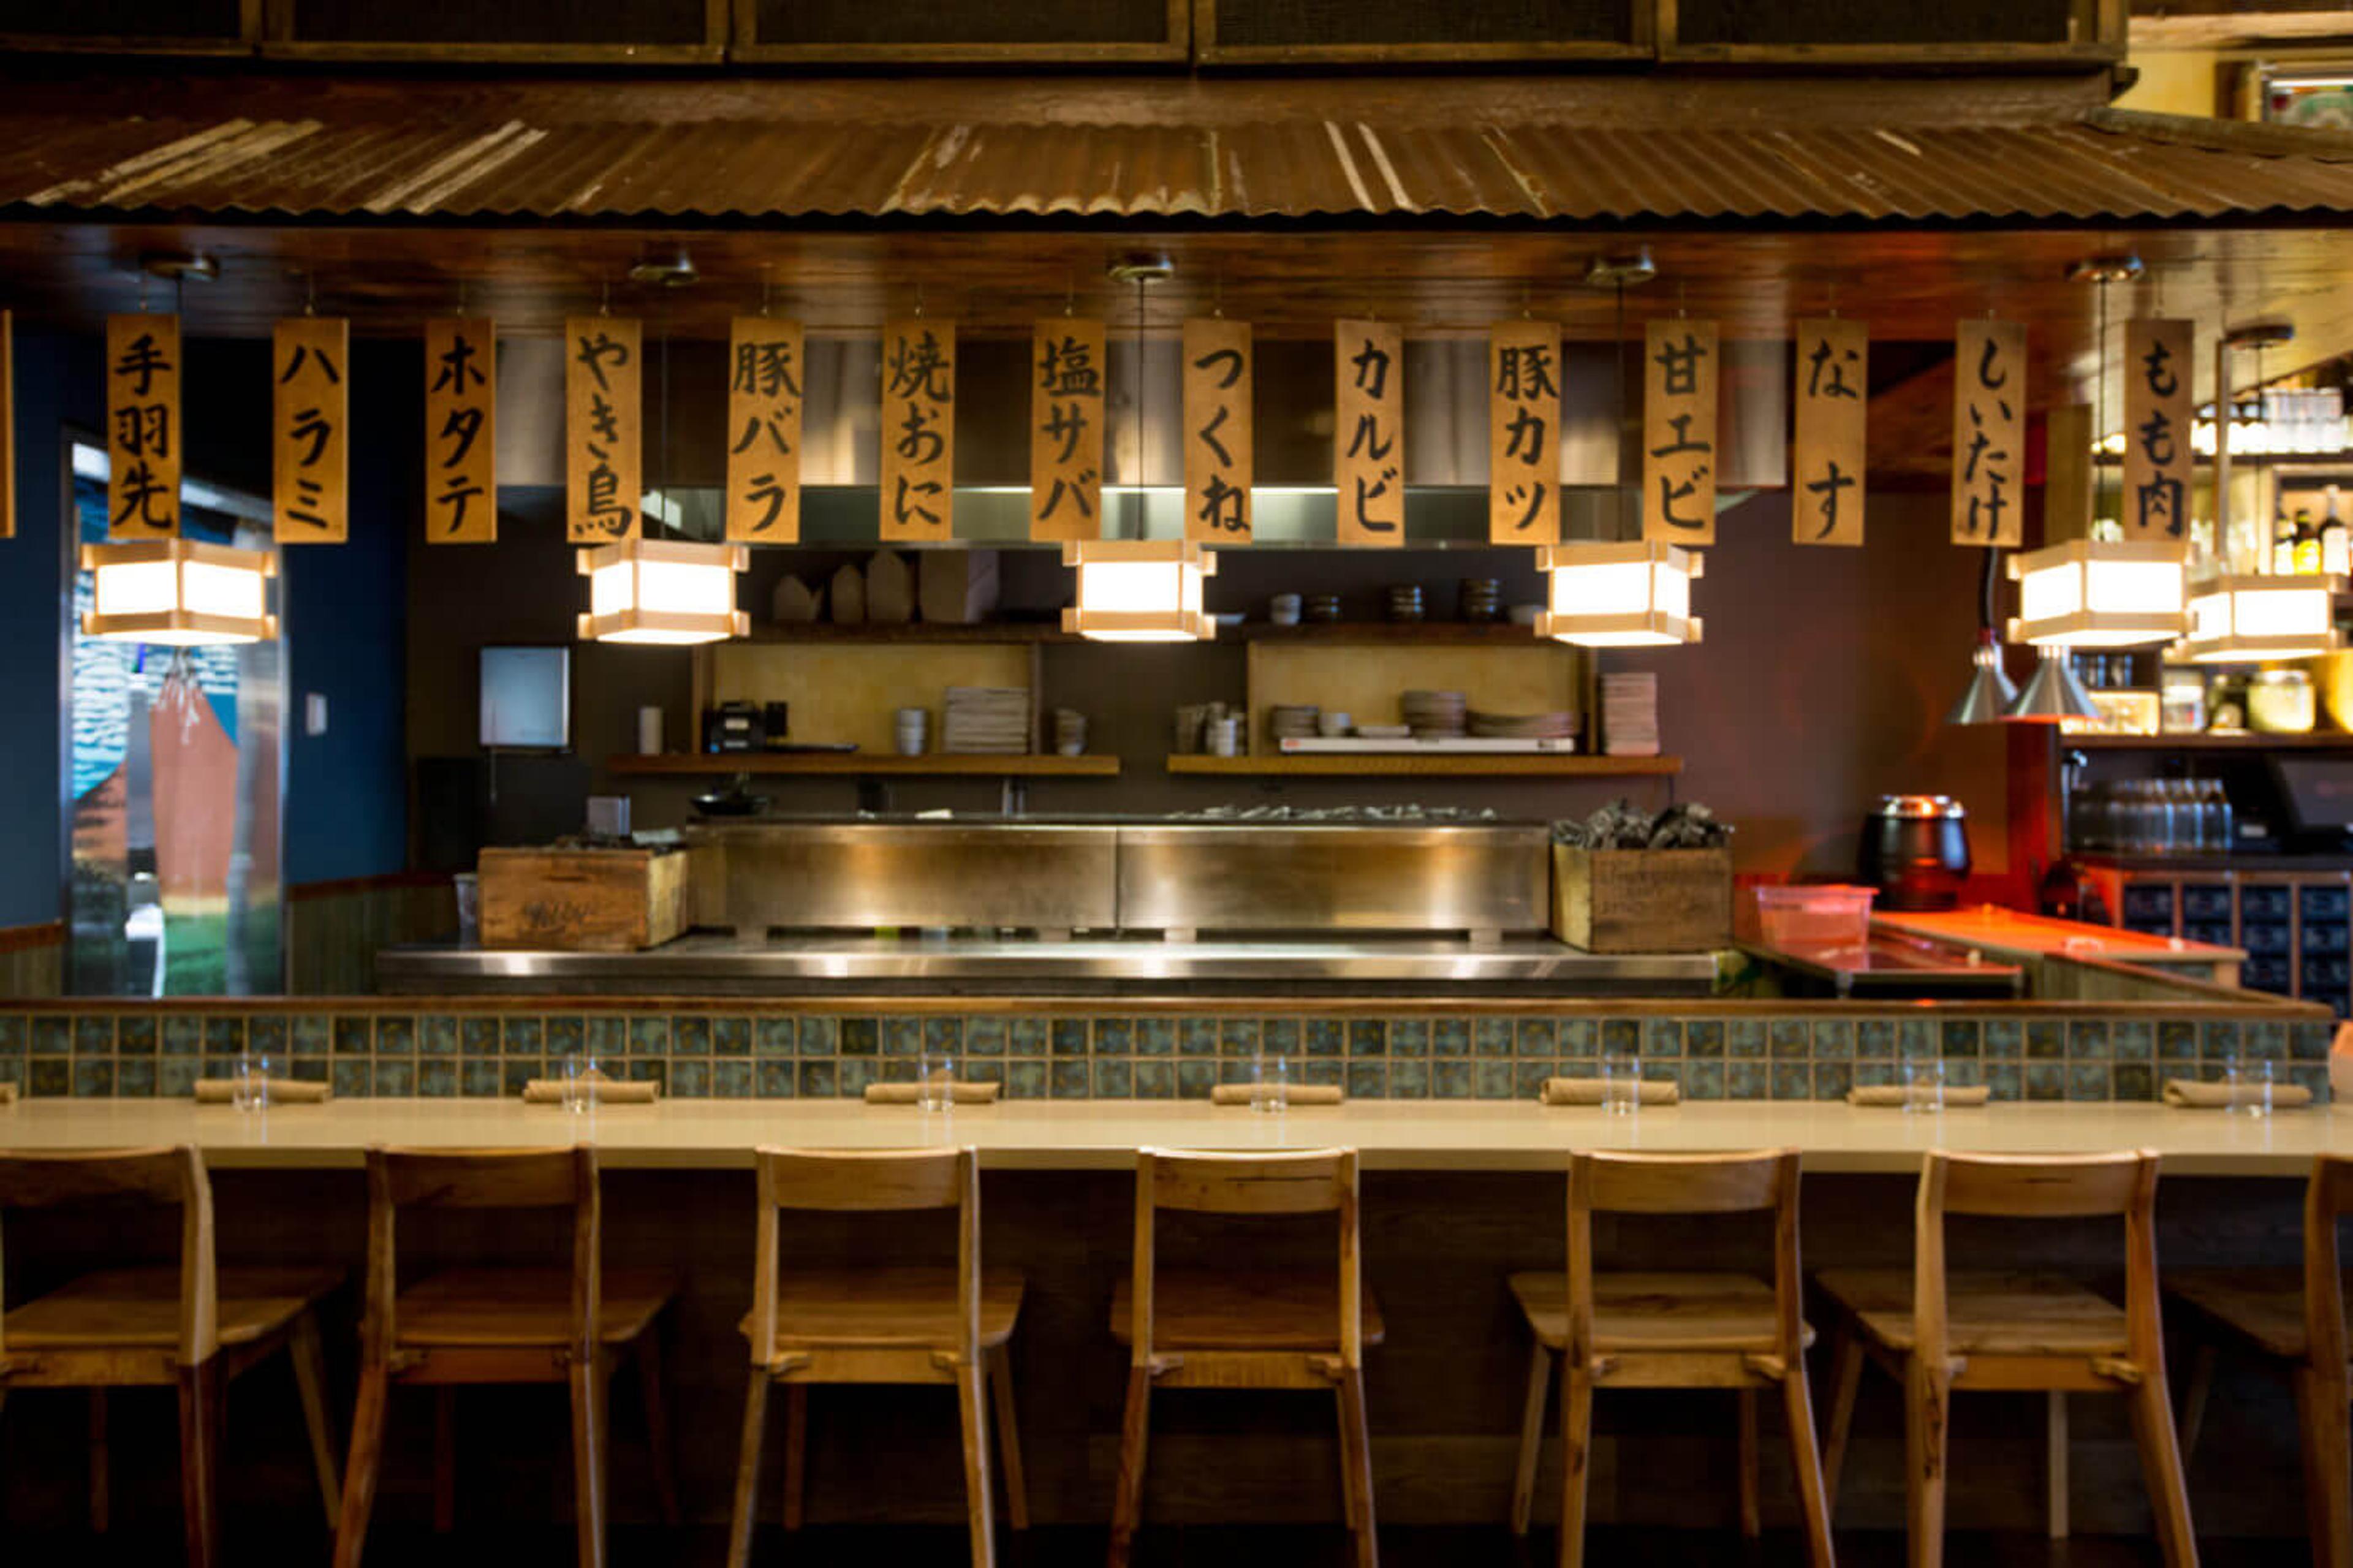 The sushi bar at the NE Portland Bamboo Sushi restaurant.